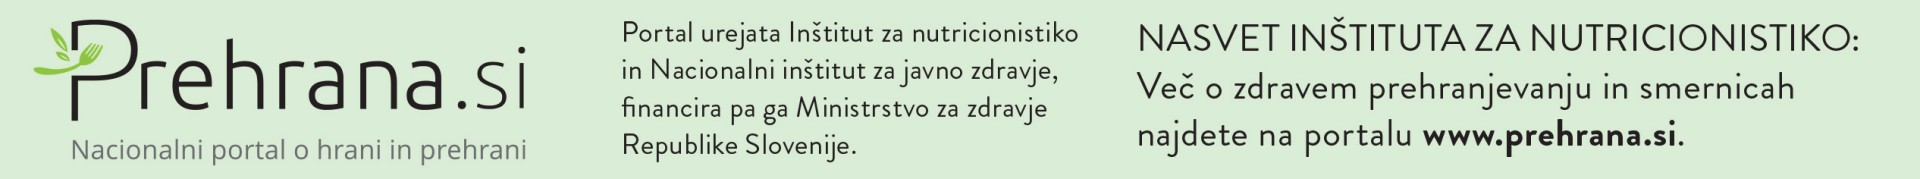 Portal Prehrana.si, nacionalni portal o hrani in prehrani